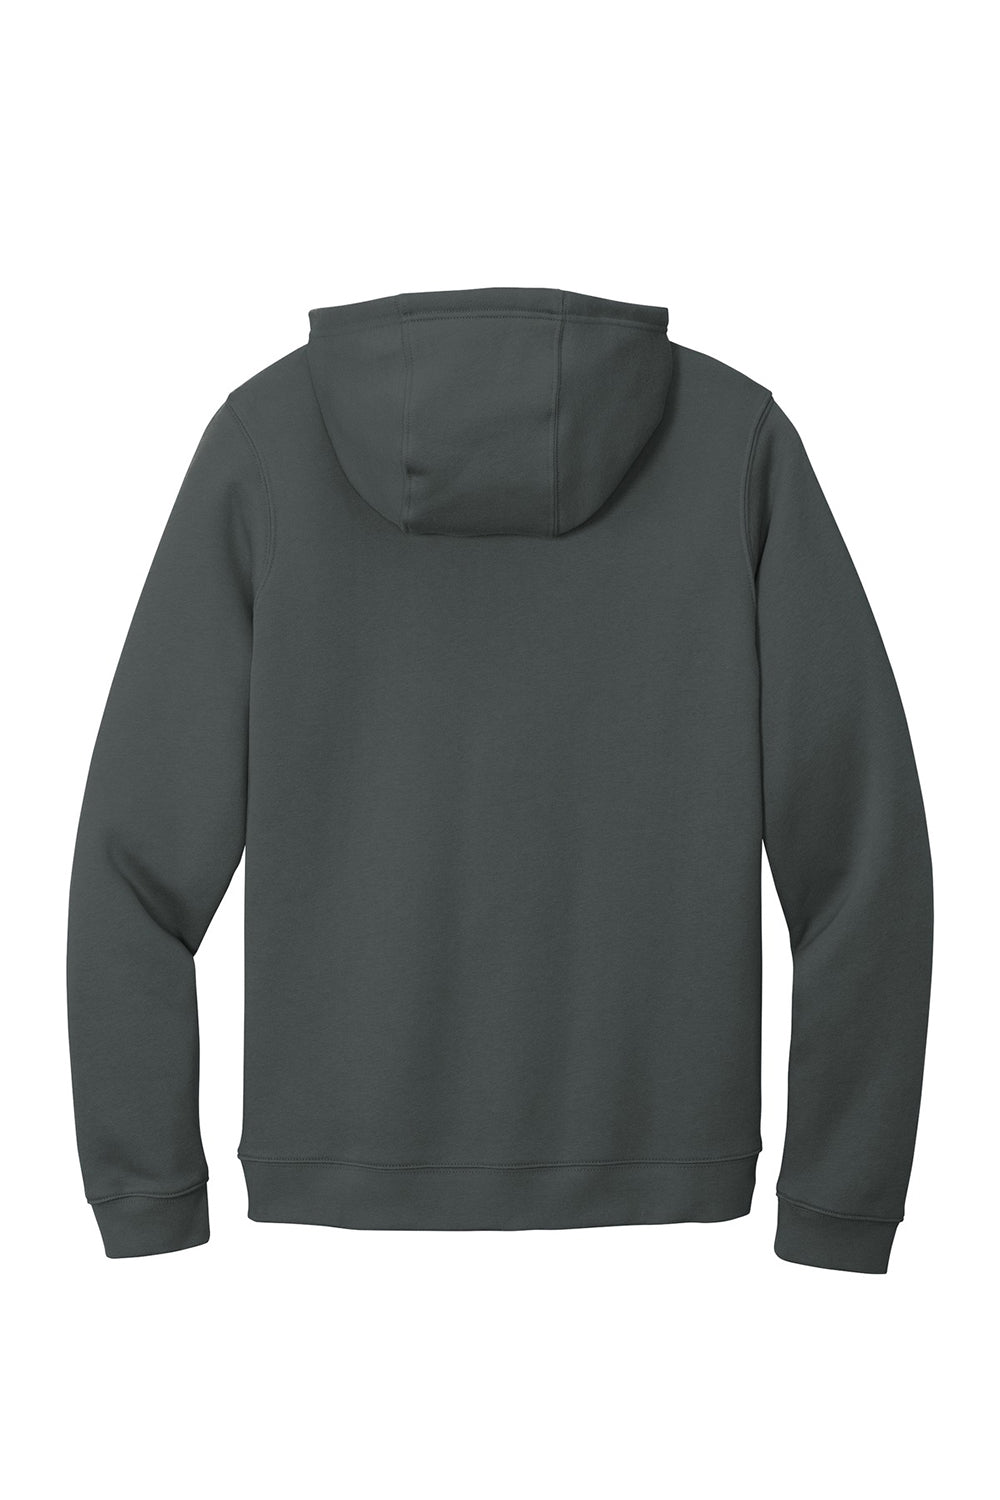 Nike CJ1611 Mens Club Fleece Hooded Sweatshirt Hoodie Anthracite Grey Flat Back